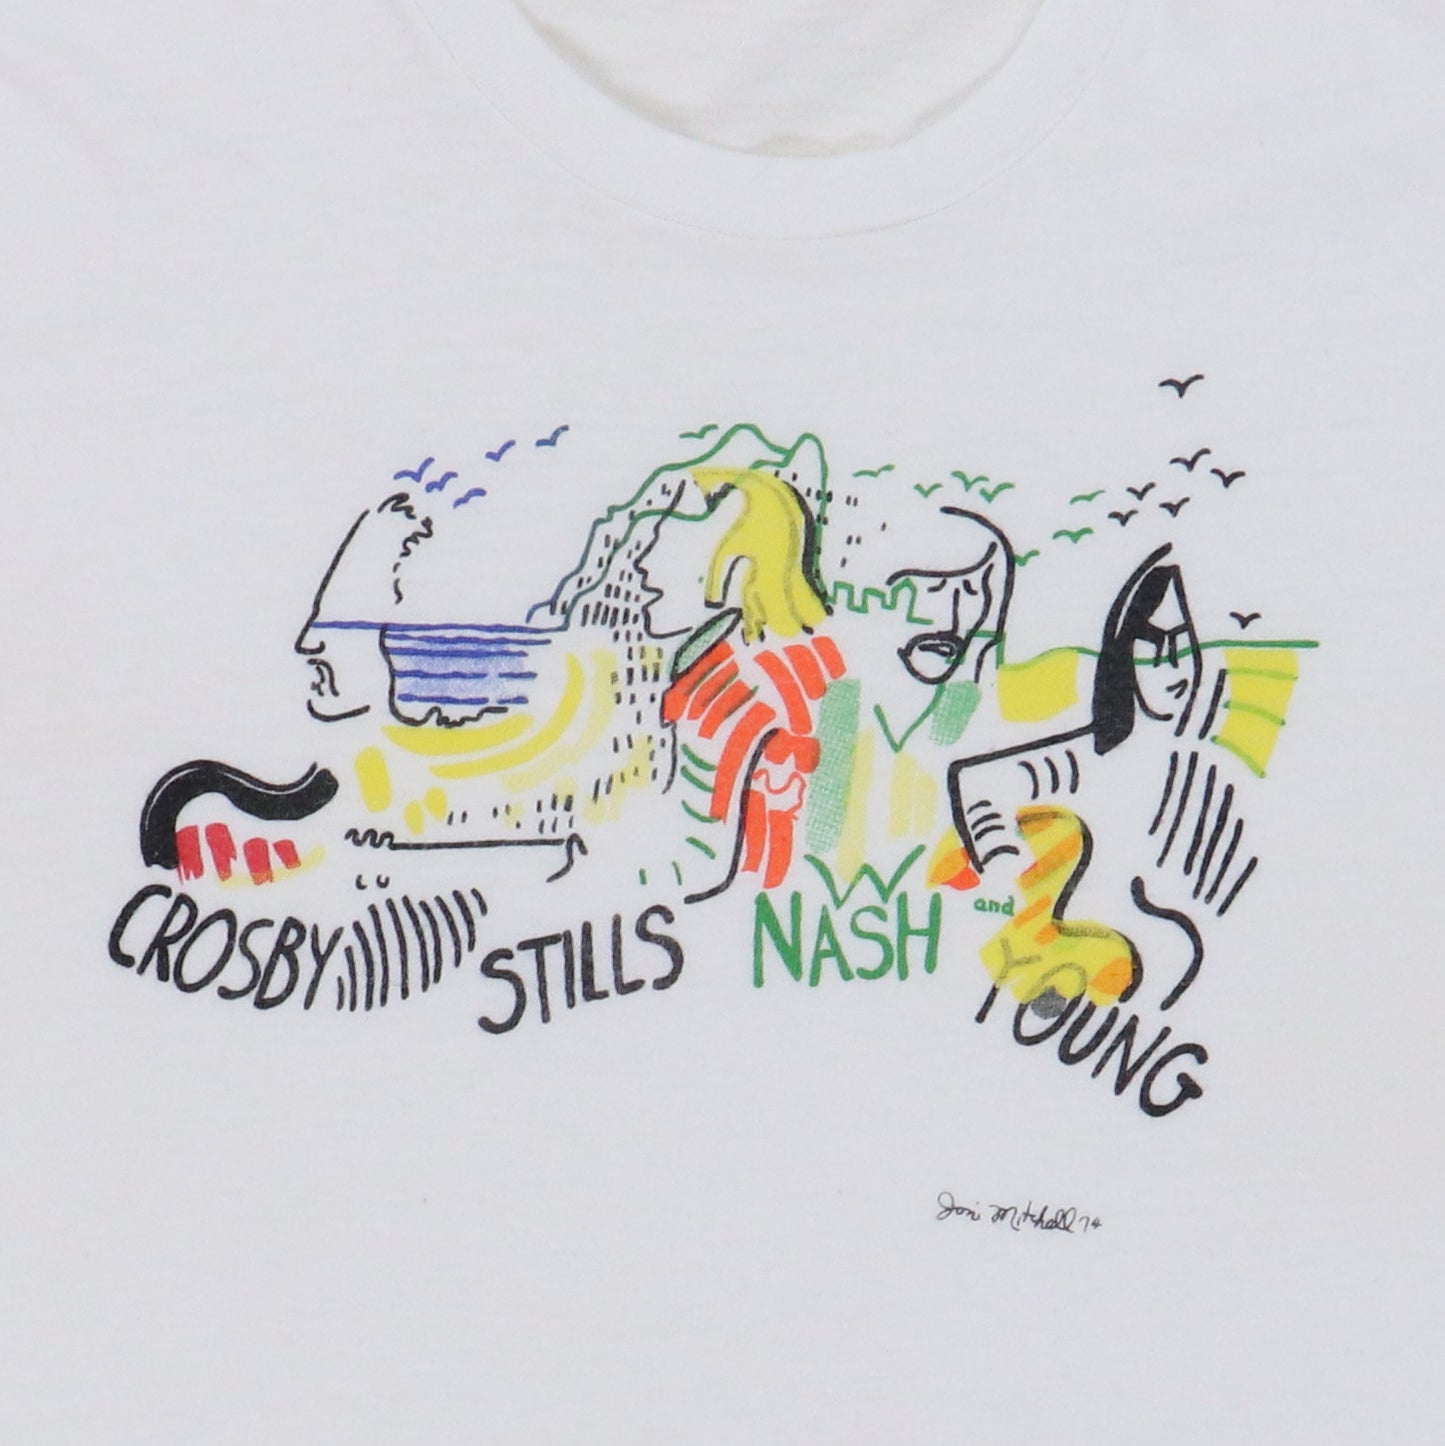 1974 Crosby Stills Nash Young Shirt